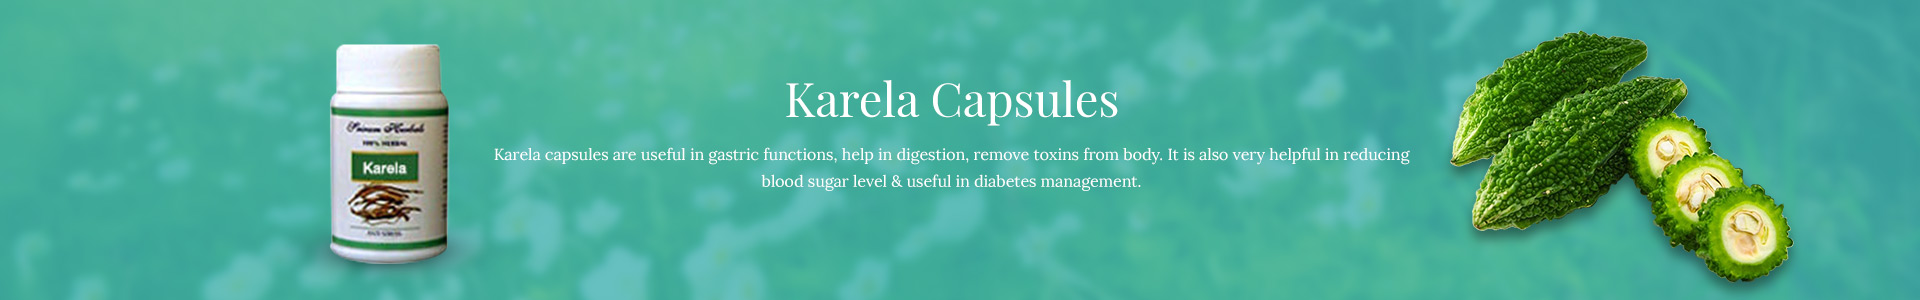 karela-capsules